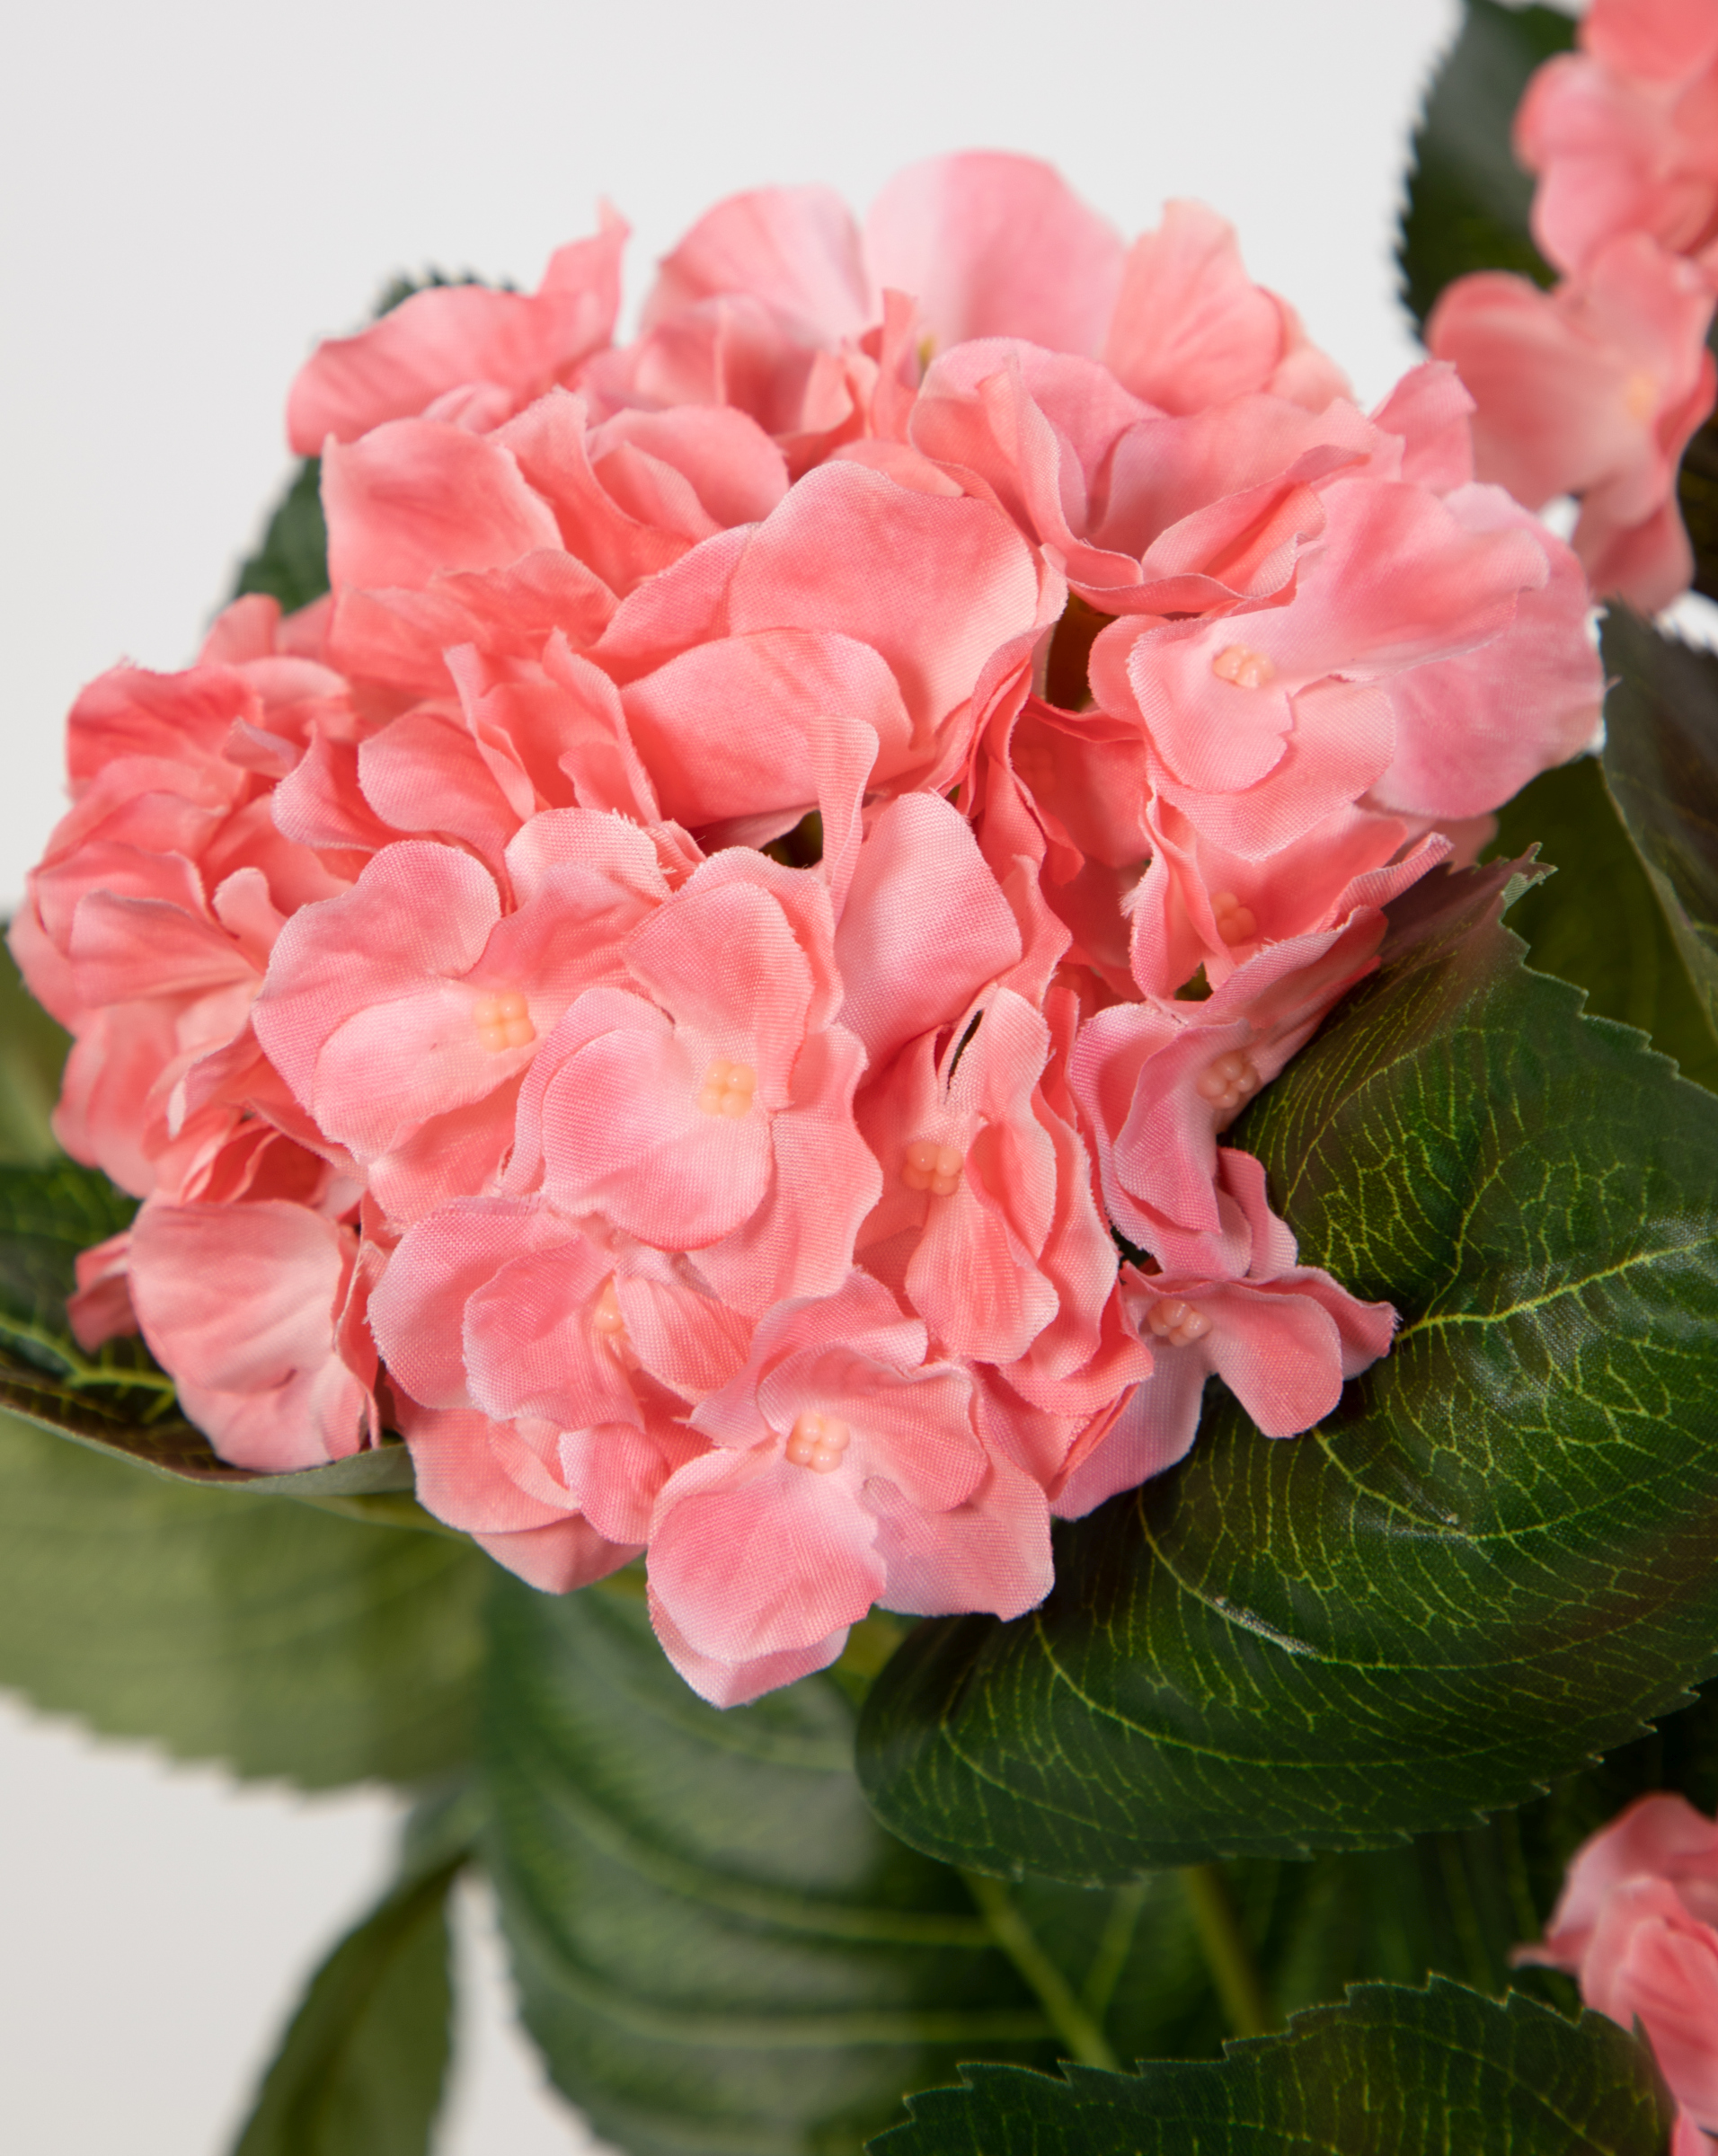 Hortensienbusch Deluxe 42cm rosa-pink im Kunstpflanzen Blumen LM Topf künstliche Hortensie Pflanzen